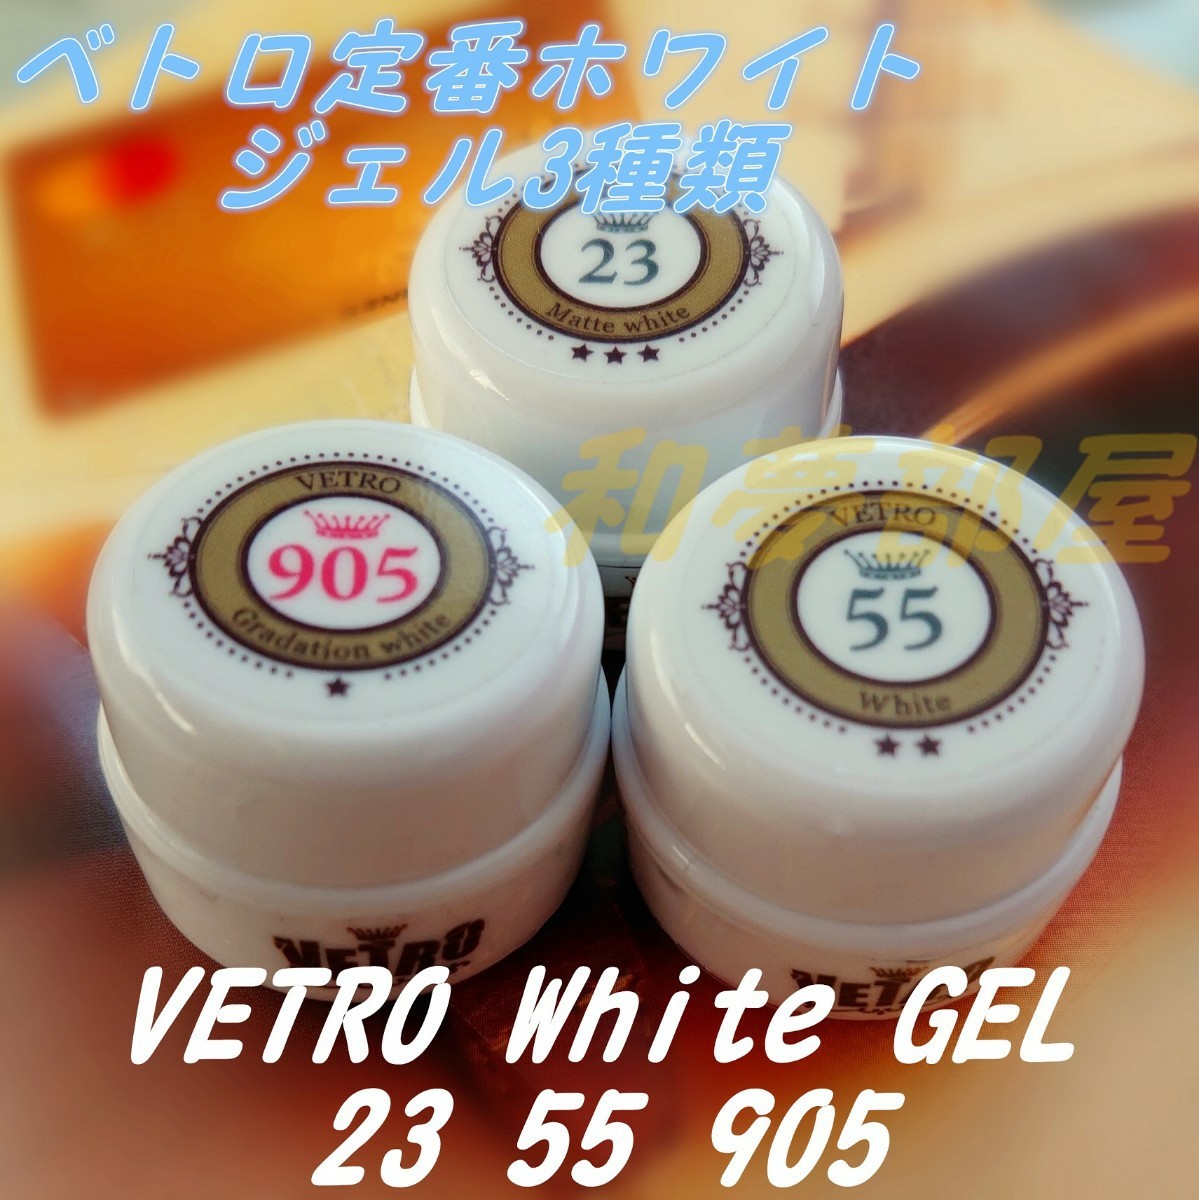 ☆新品★ベトロVETRO定番ホワイトカラージェル3種セット☆23,55,905★